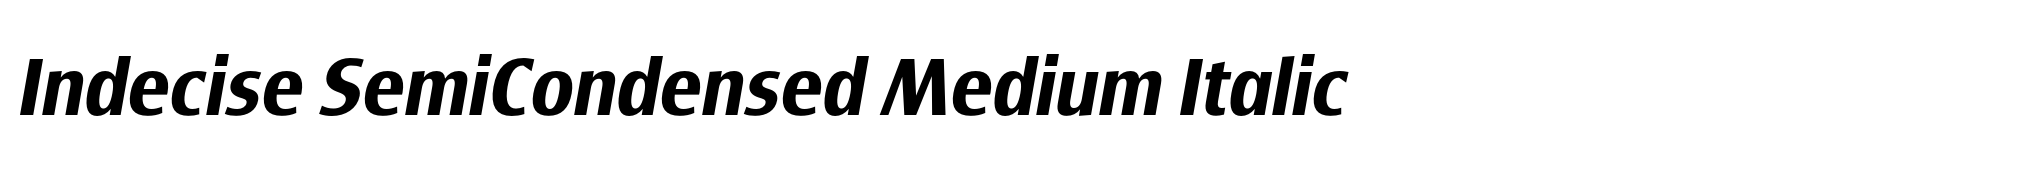 Indecise SemiCondensed Medium Italic image